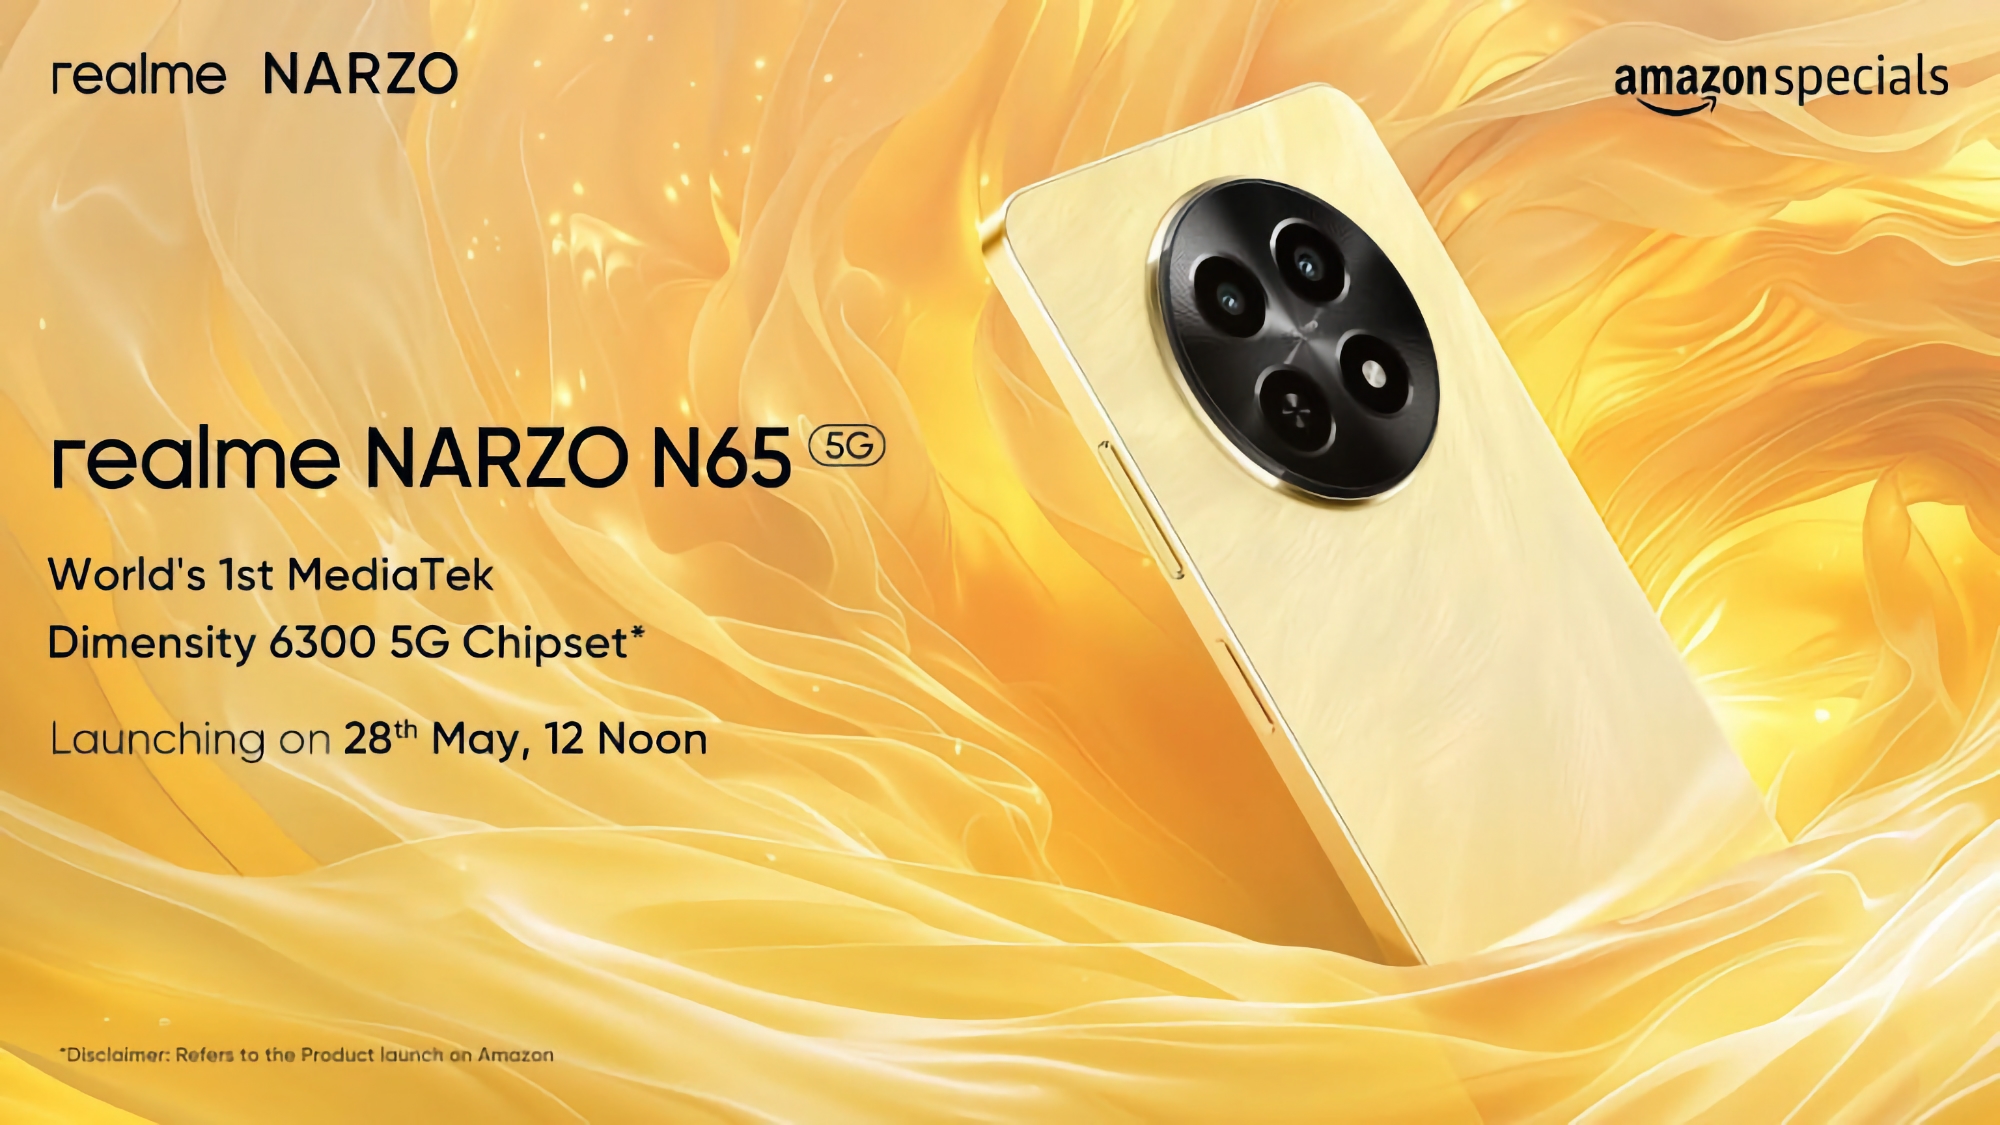 realme kommer att presentera Narzo N65 5G budget-smartphone med MediaTek Dimensity 6300-processor ombord den 28 maj